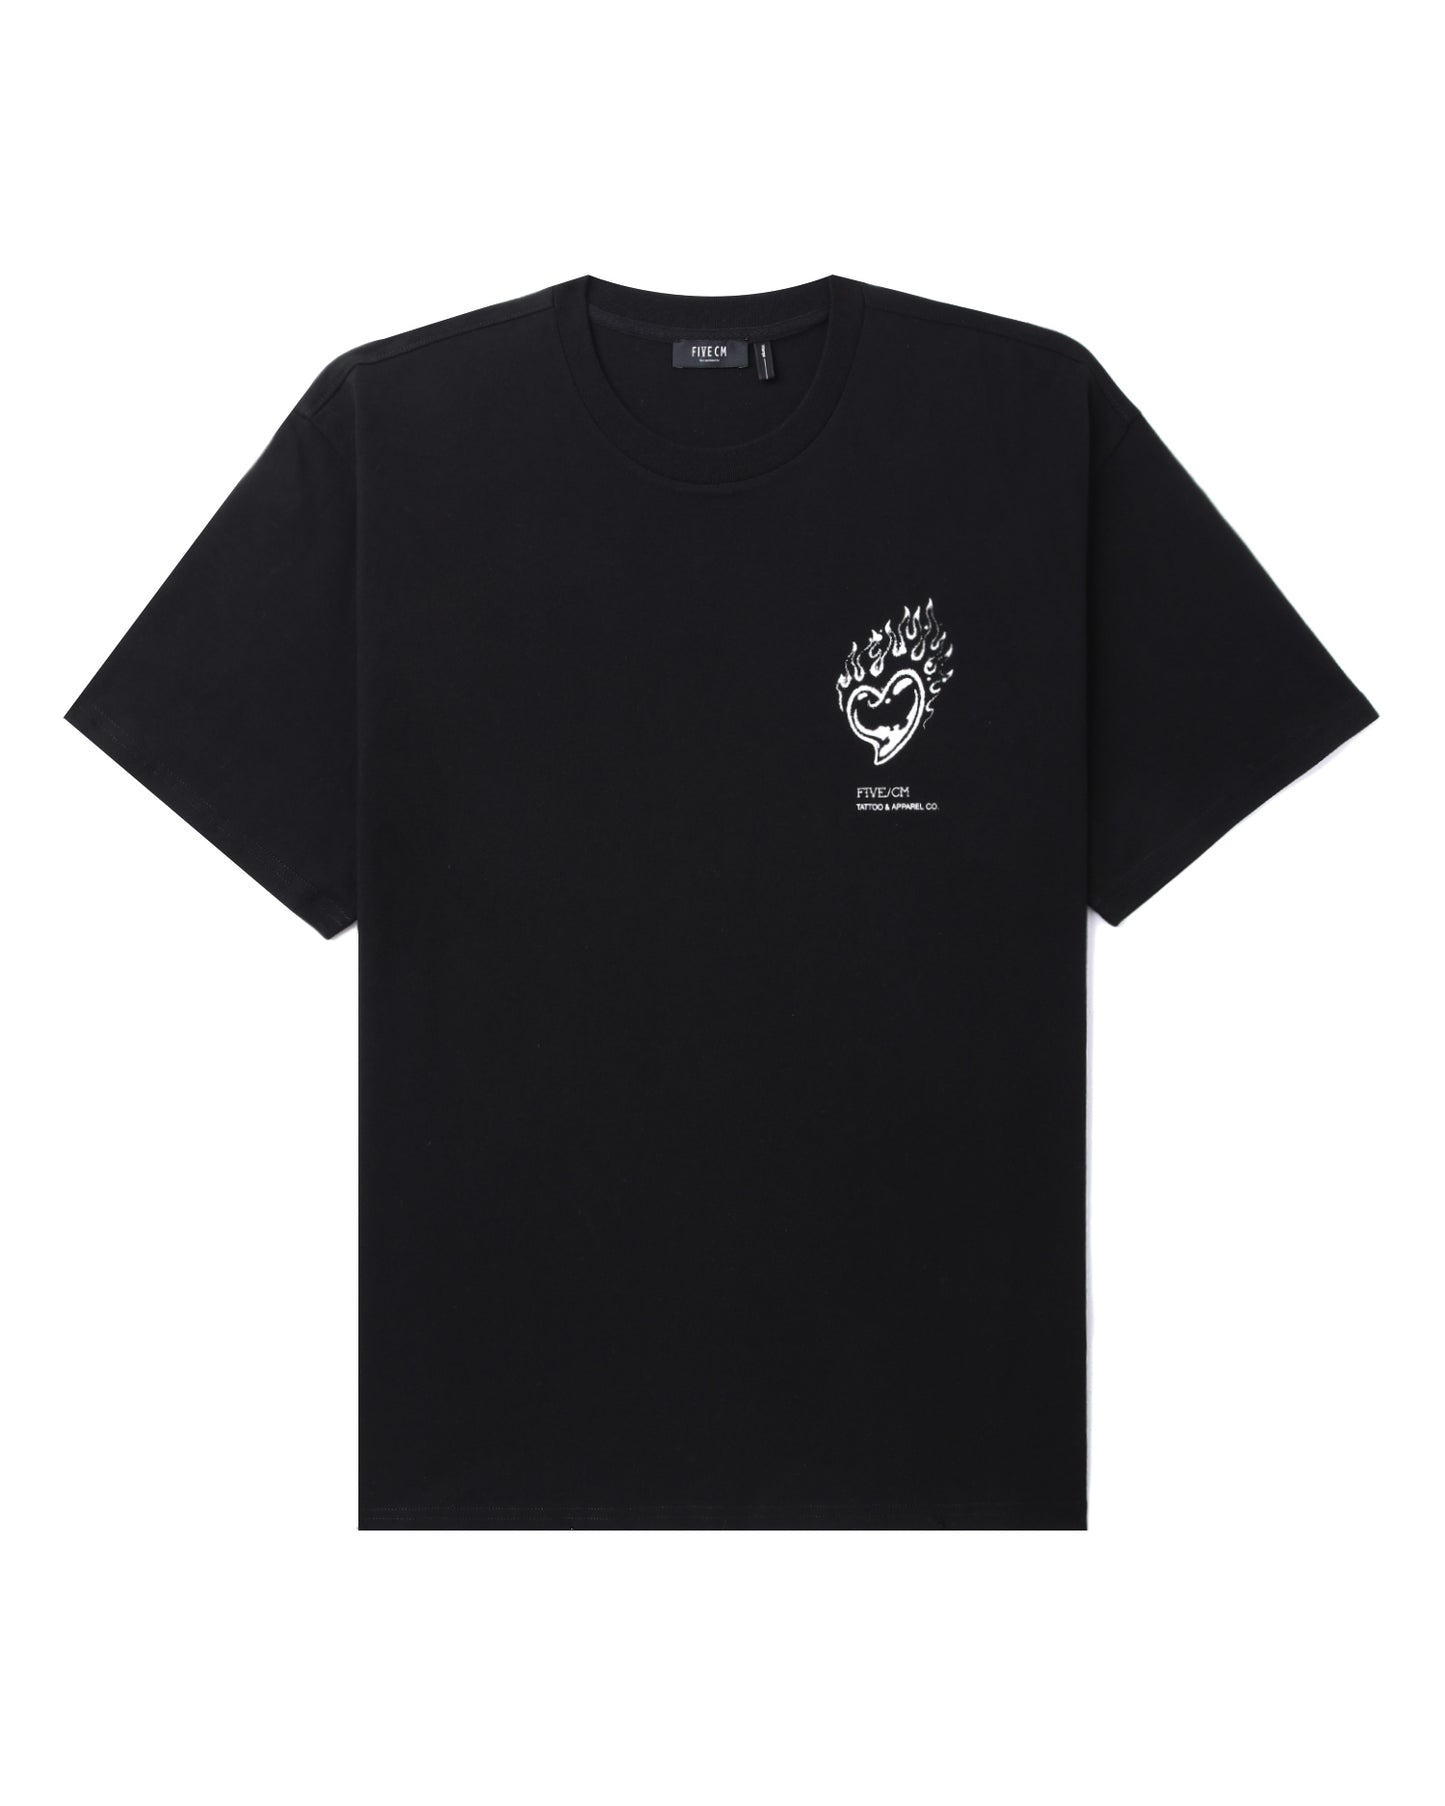 Men's Burning Love T-shirt in Black